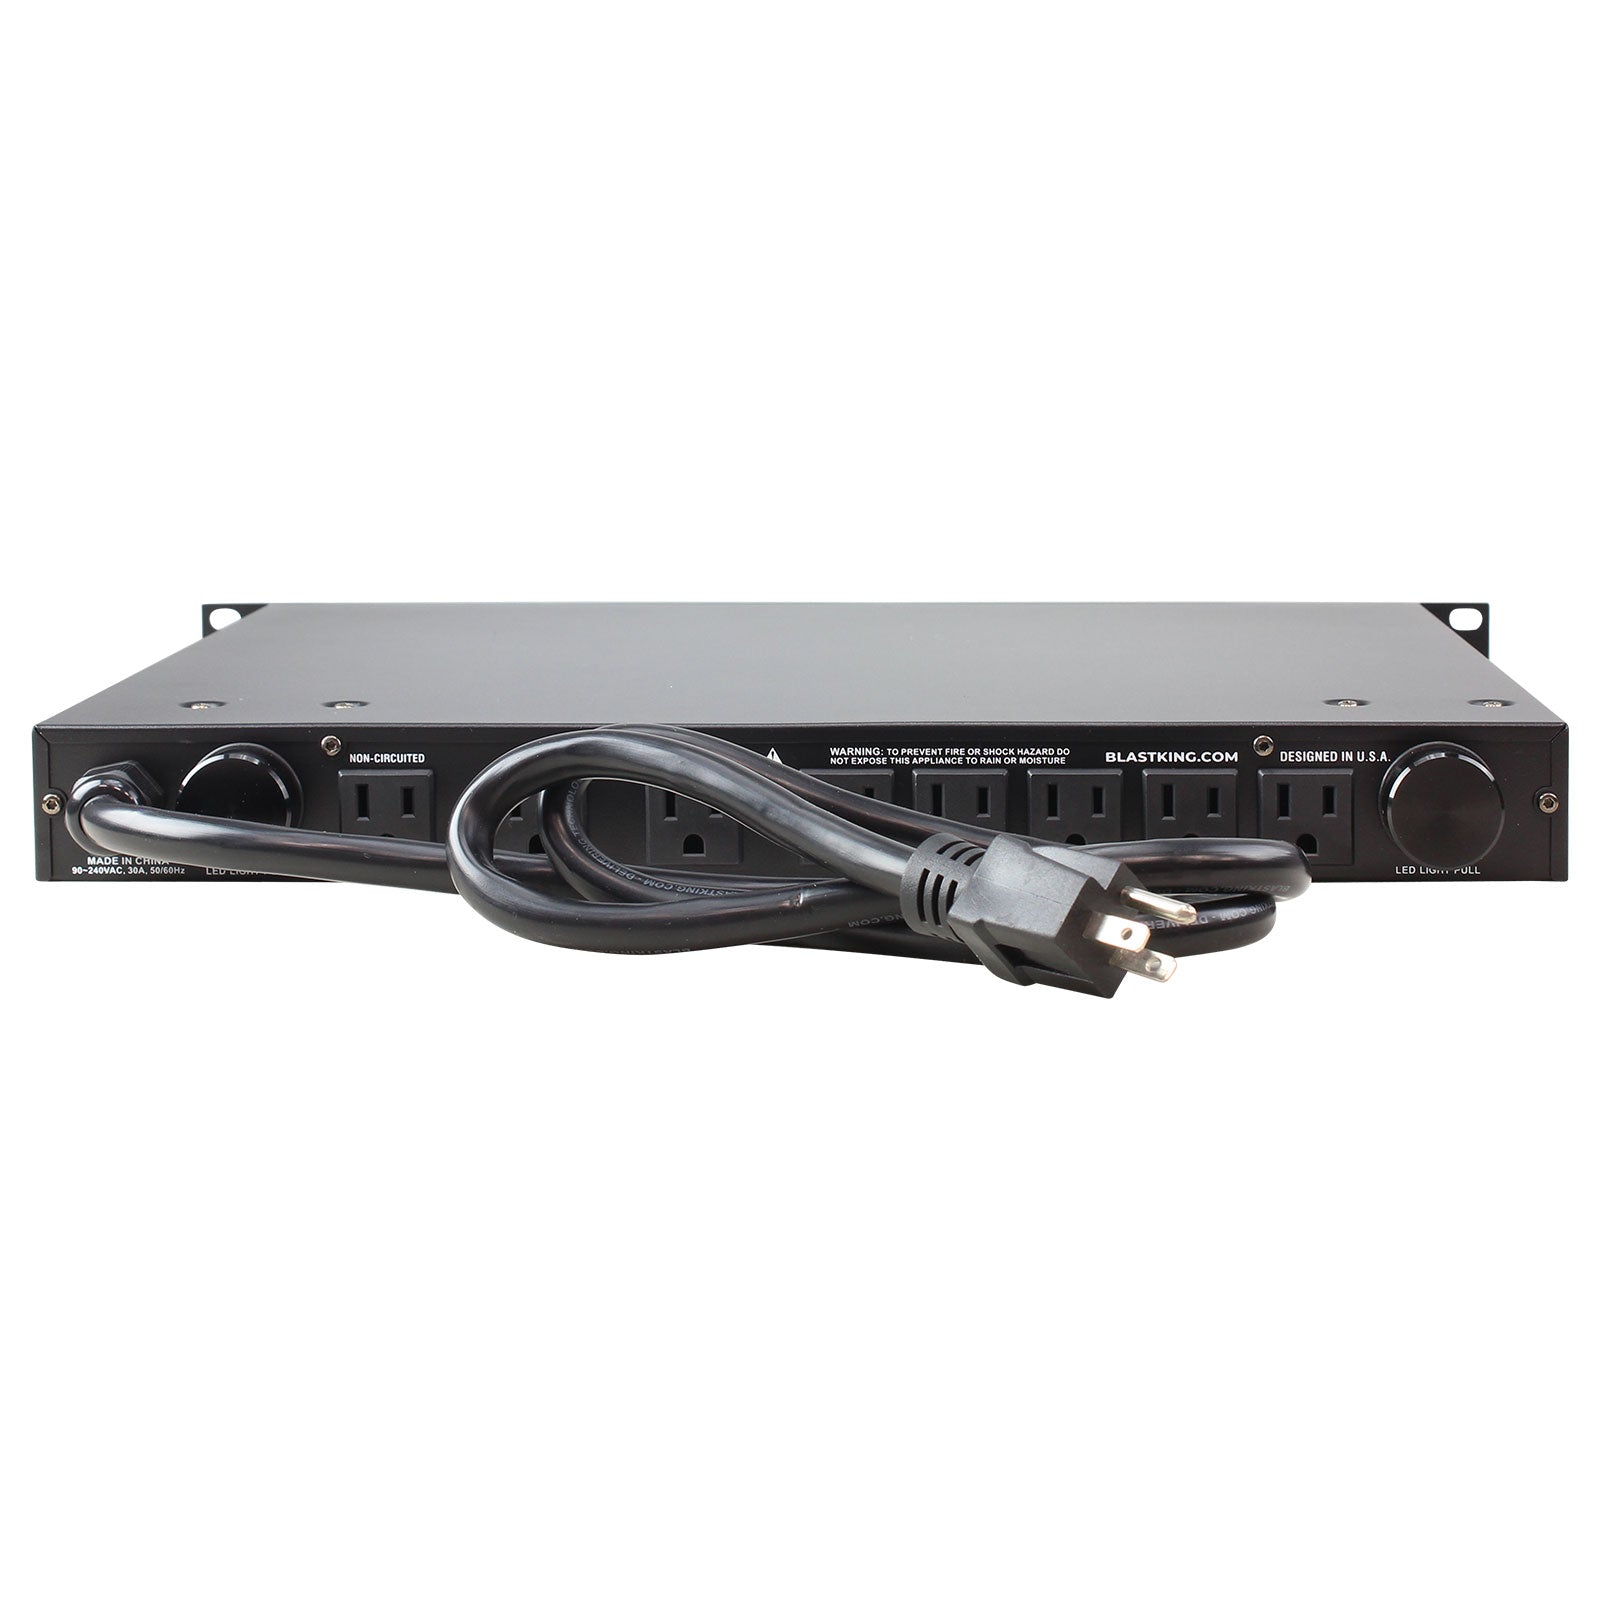 Blastking PC904-AV3 30 Amp Power Conditioner